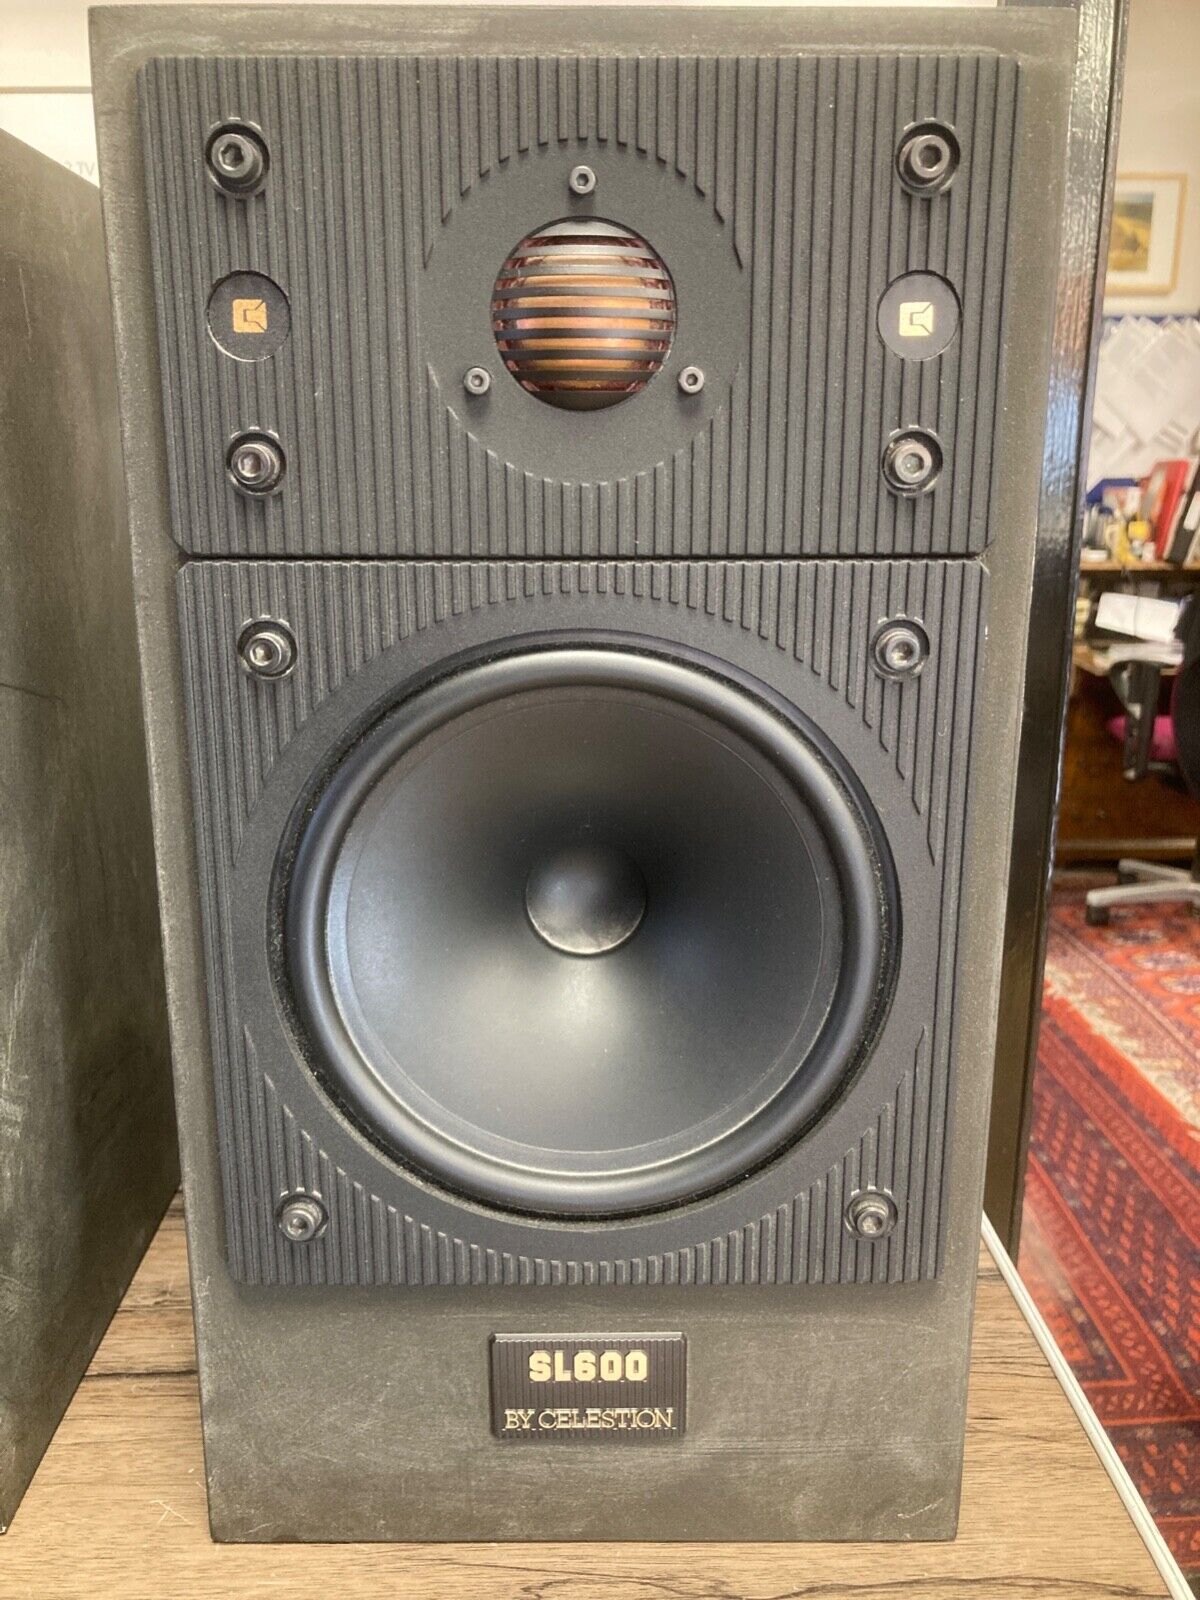 For Sale - Celestion SL600 Loudspeakers | diyAudio